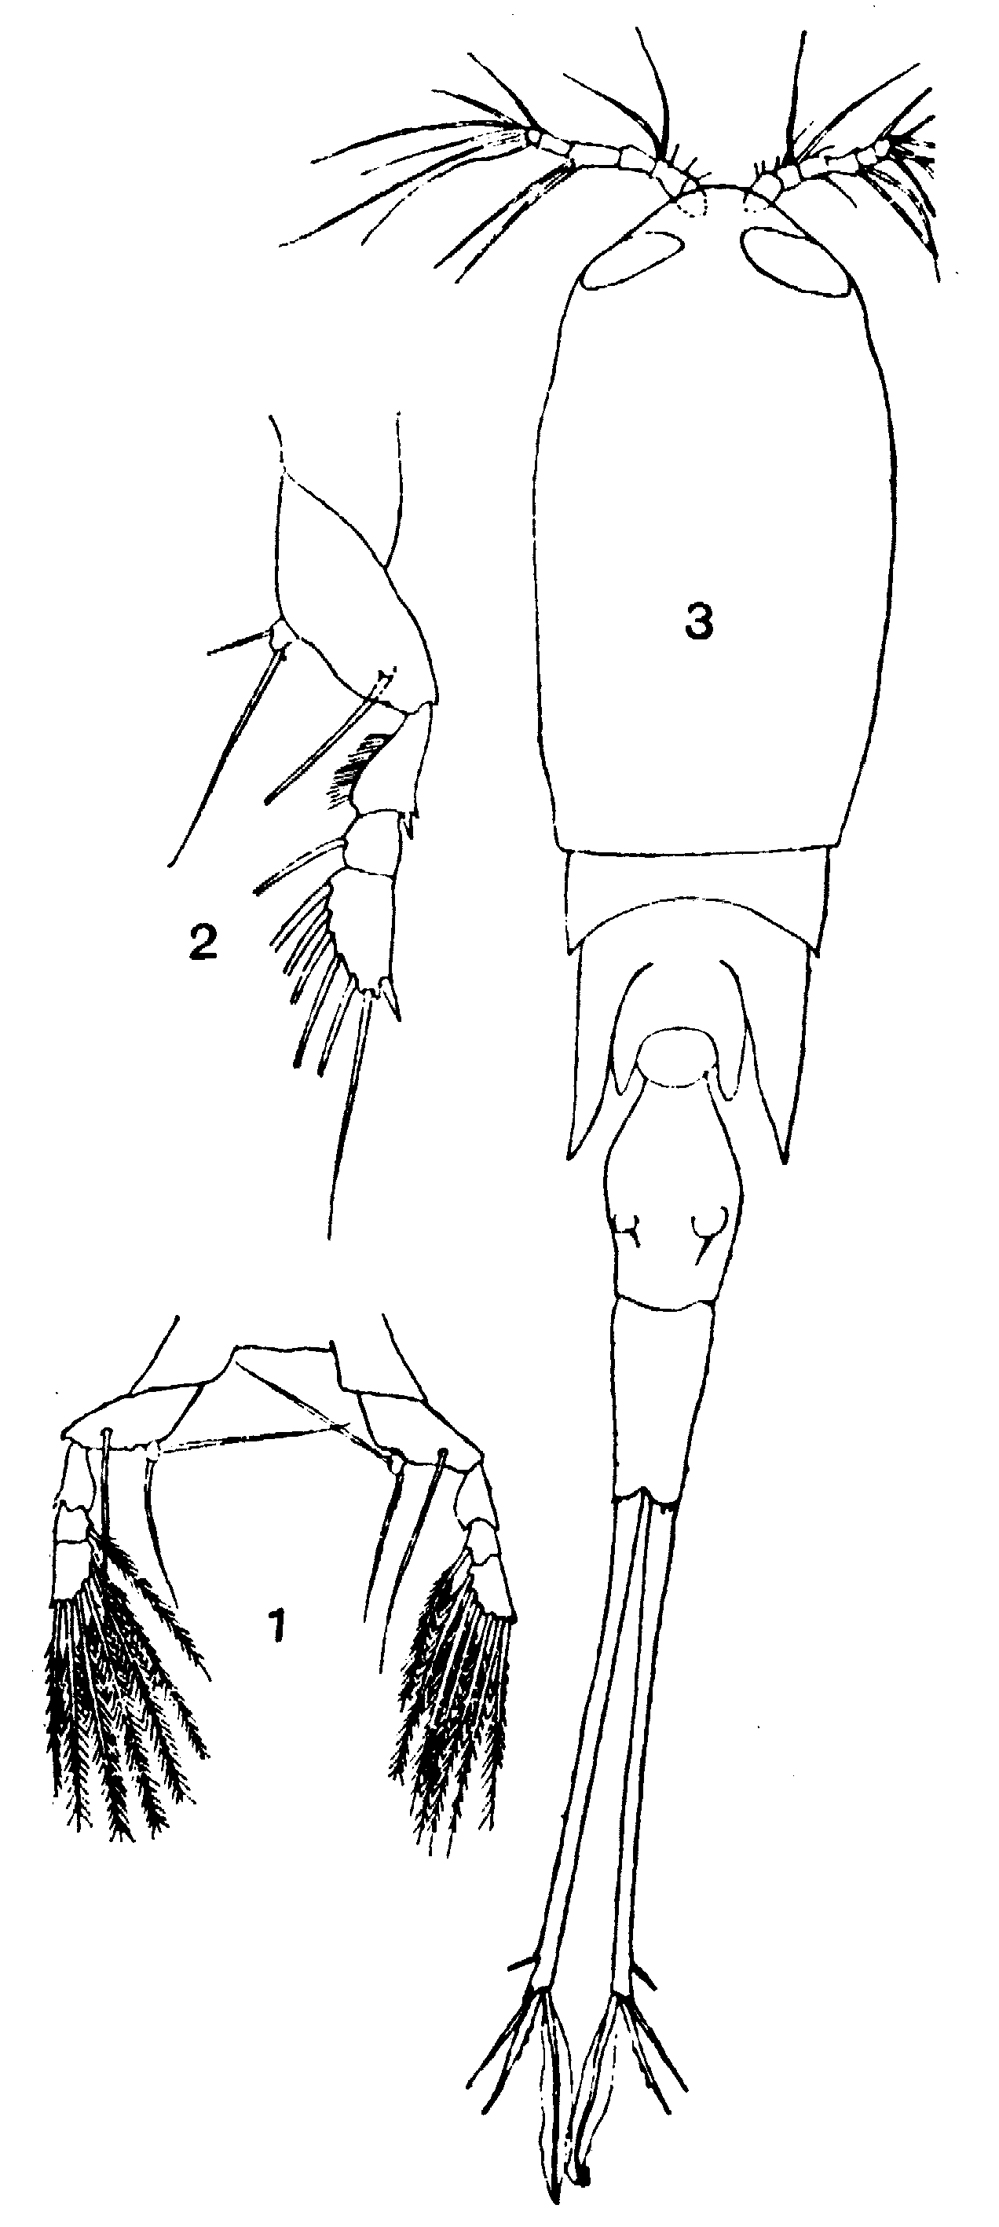 Espèce Corycaeus (Urocorycaeus) lautus - Planche 18 de figures morphologiques